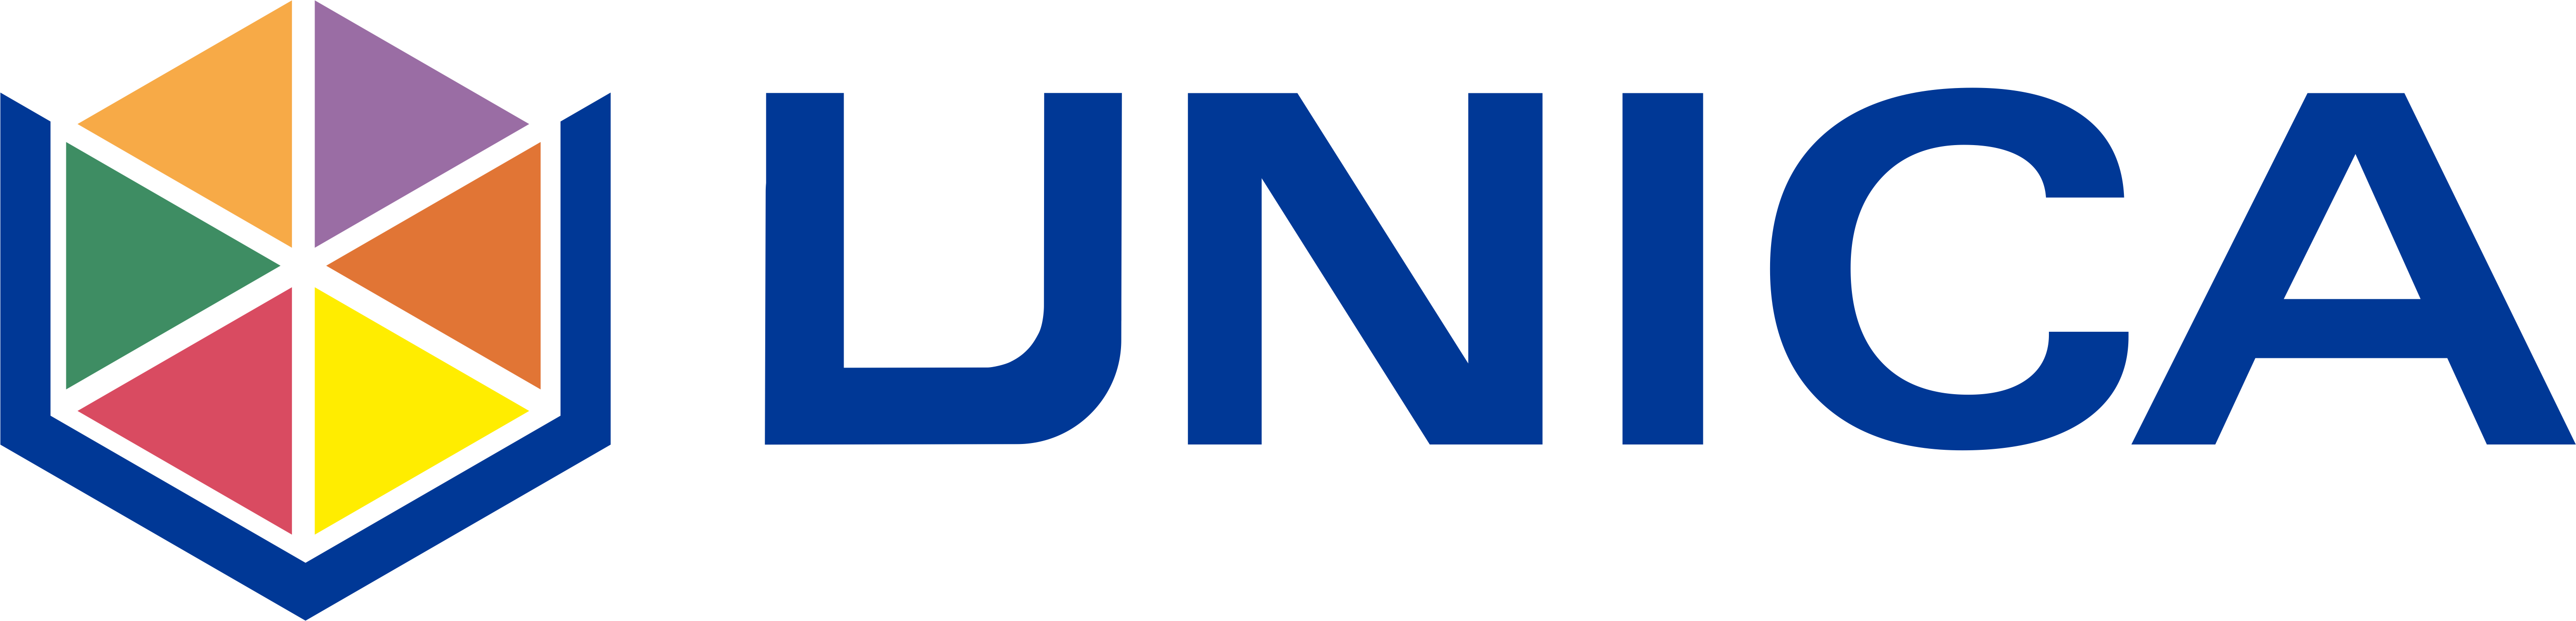 UNICA logo_6colori